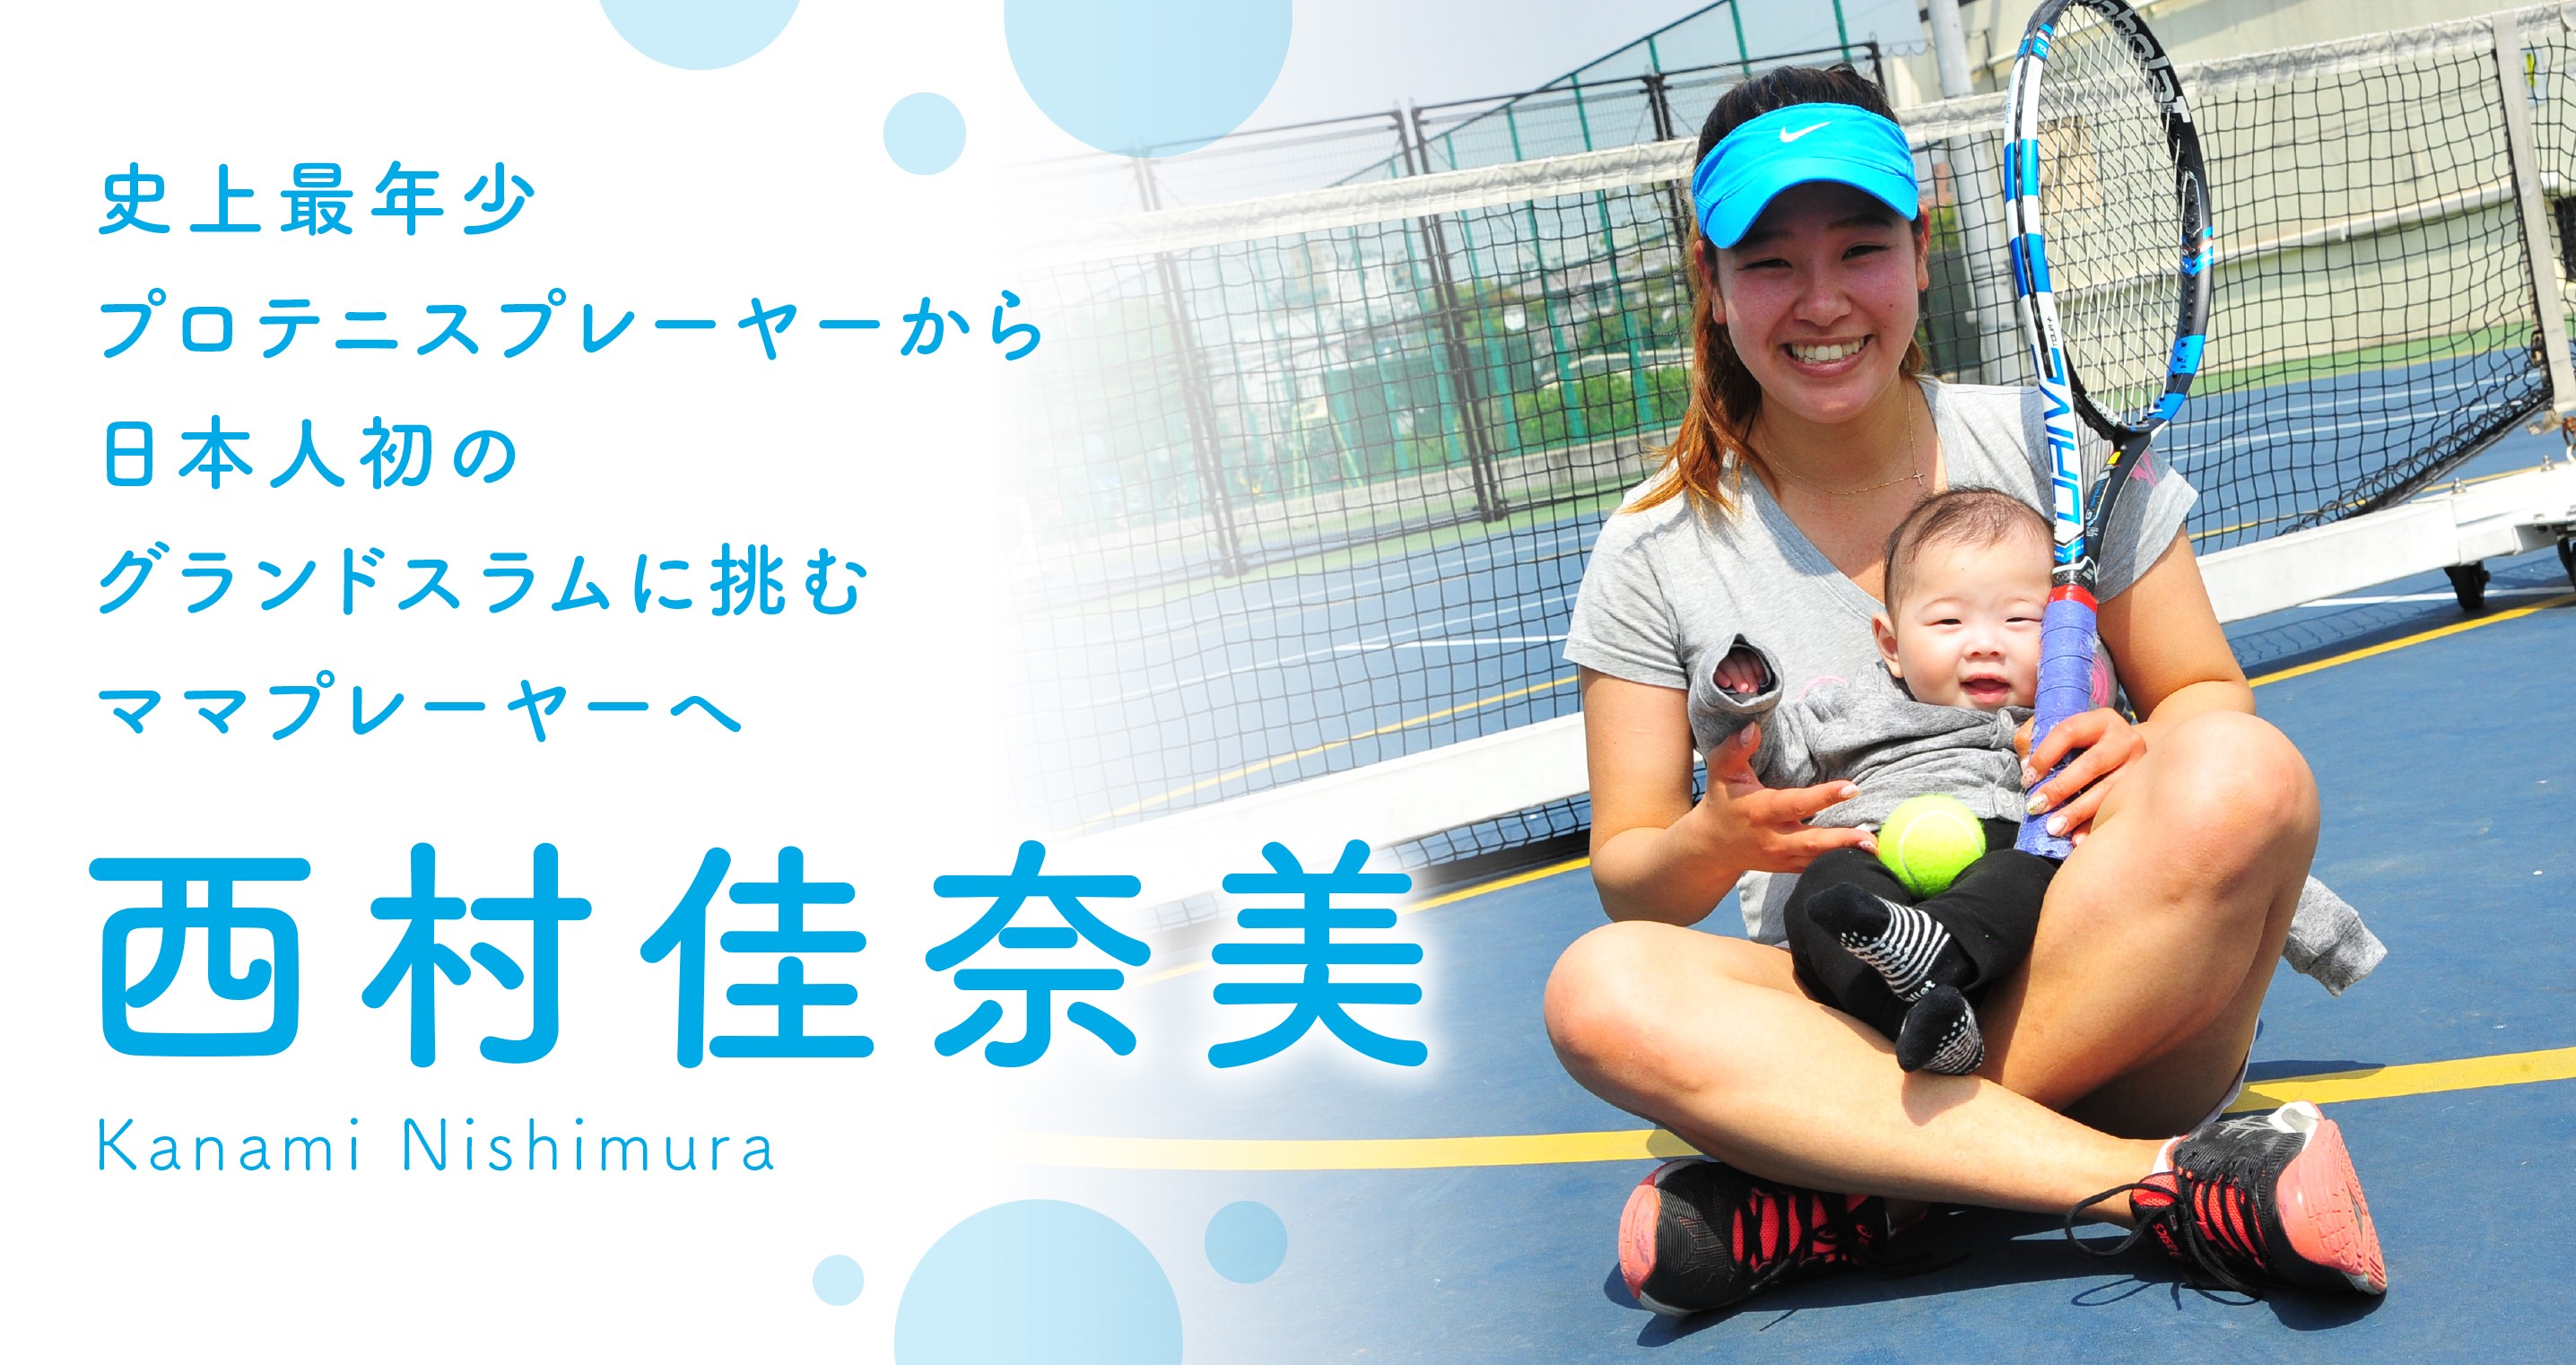 西村佳奈美 史上最年少プロテニスプレーヤーから日本人初のグランドスラムに挑むママプレーヤーへ 前編 Web Magazine Vitup ヴィタップ